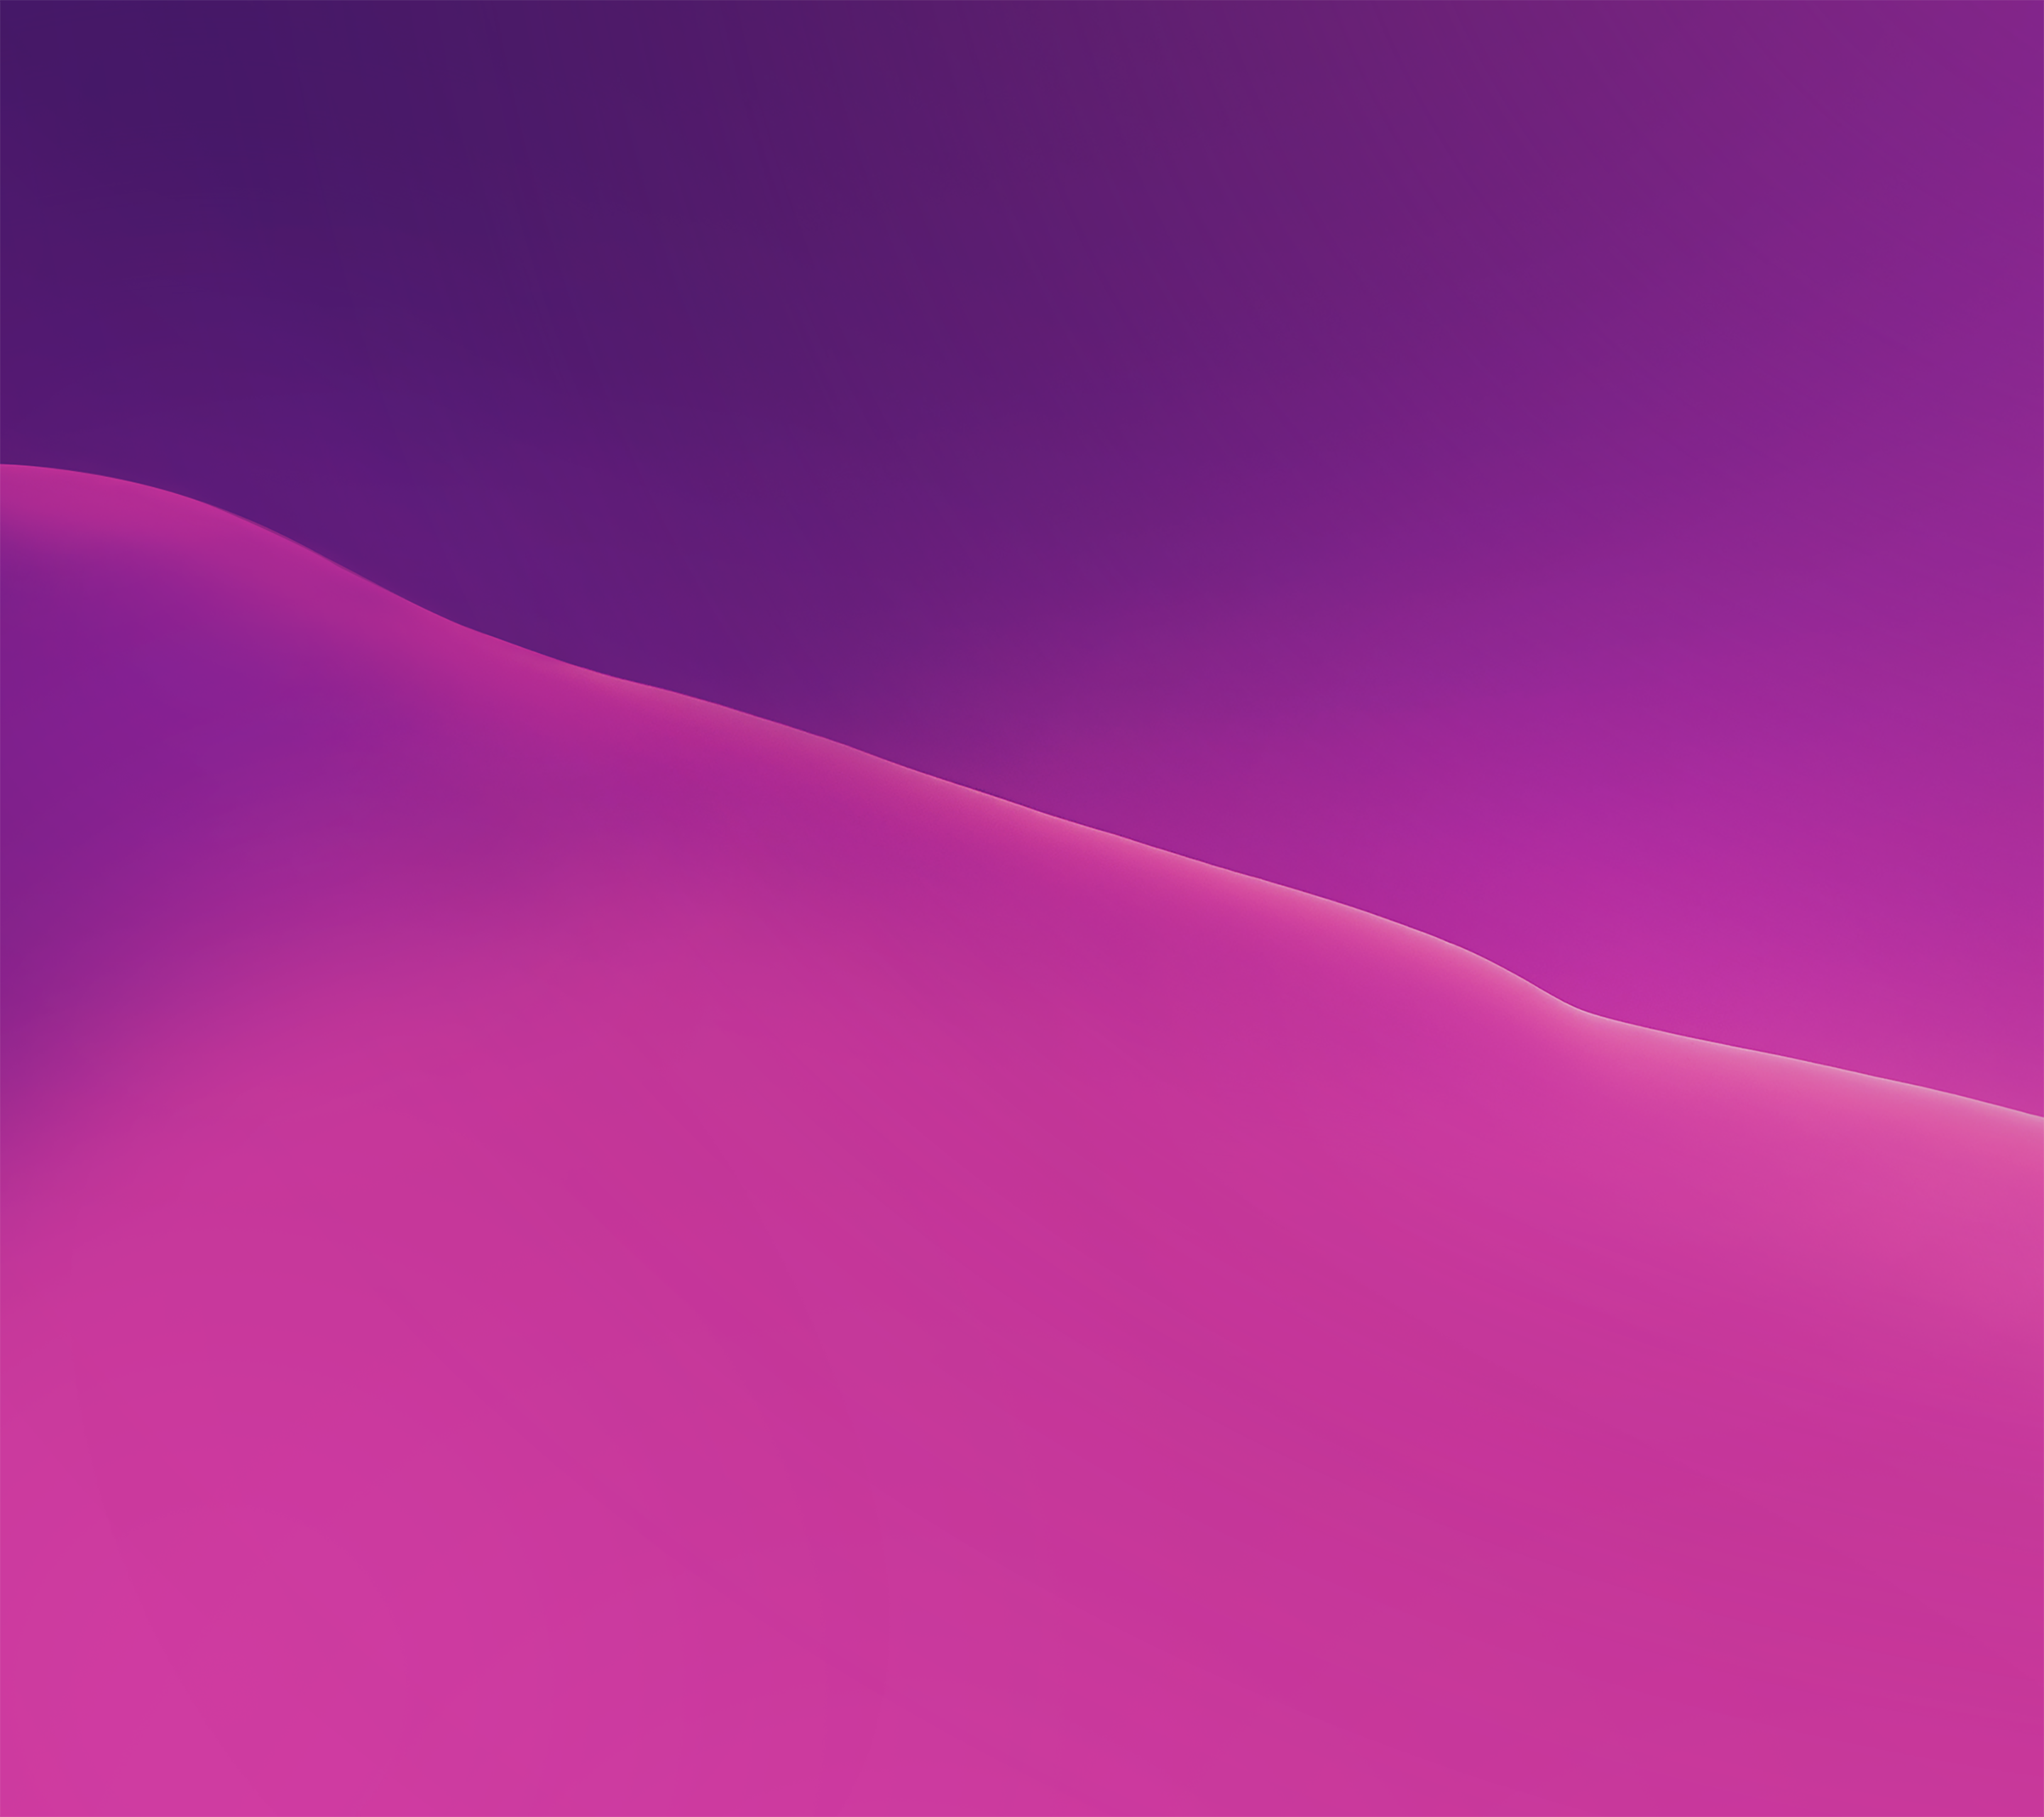 google pixel stock wallpaper,pink,violet,purple,sky,magenta